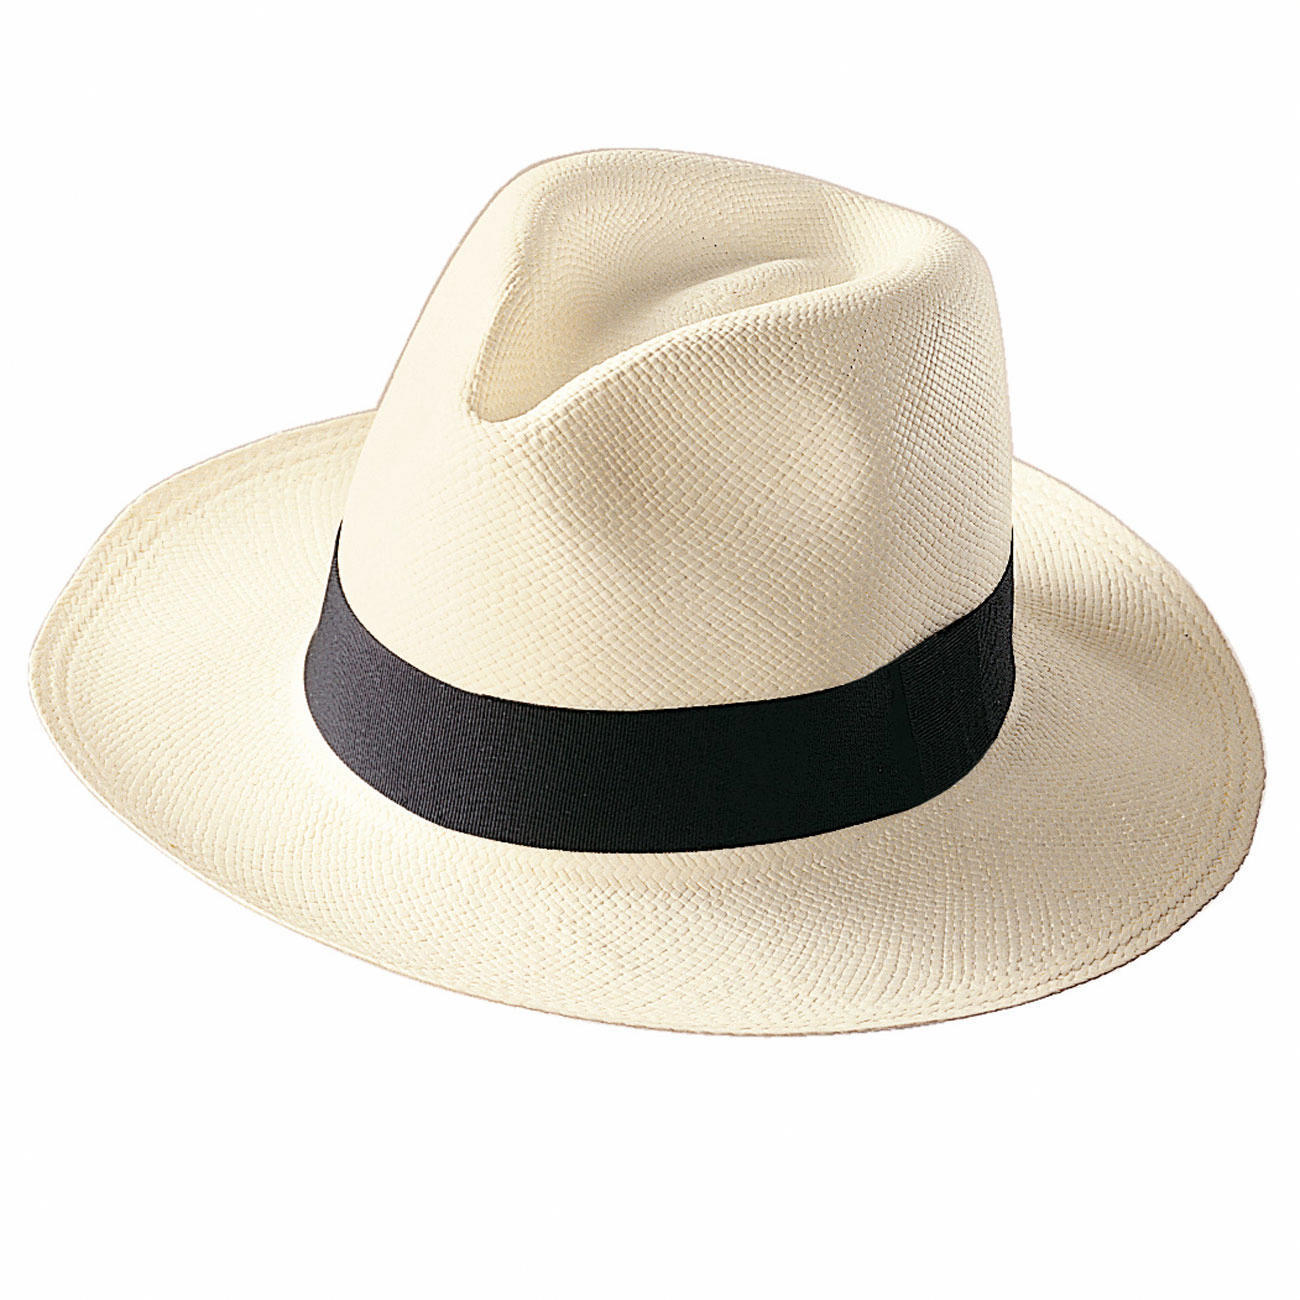 Stewart Island Op maat Billy Goat Panama-hoed | wahre Mode-Klassiker entdecken